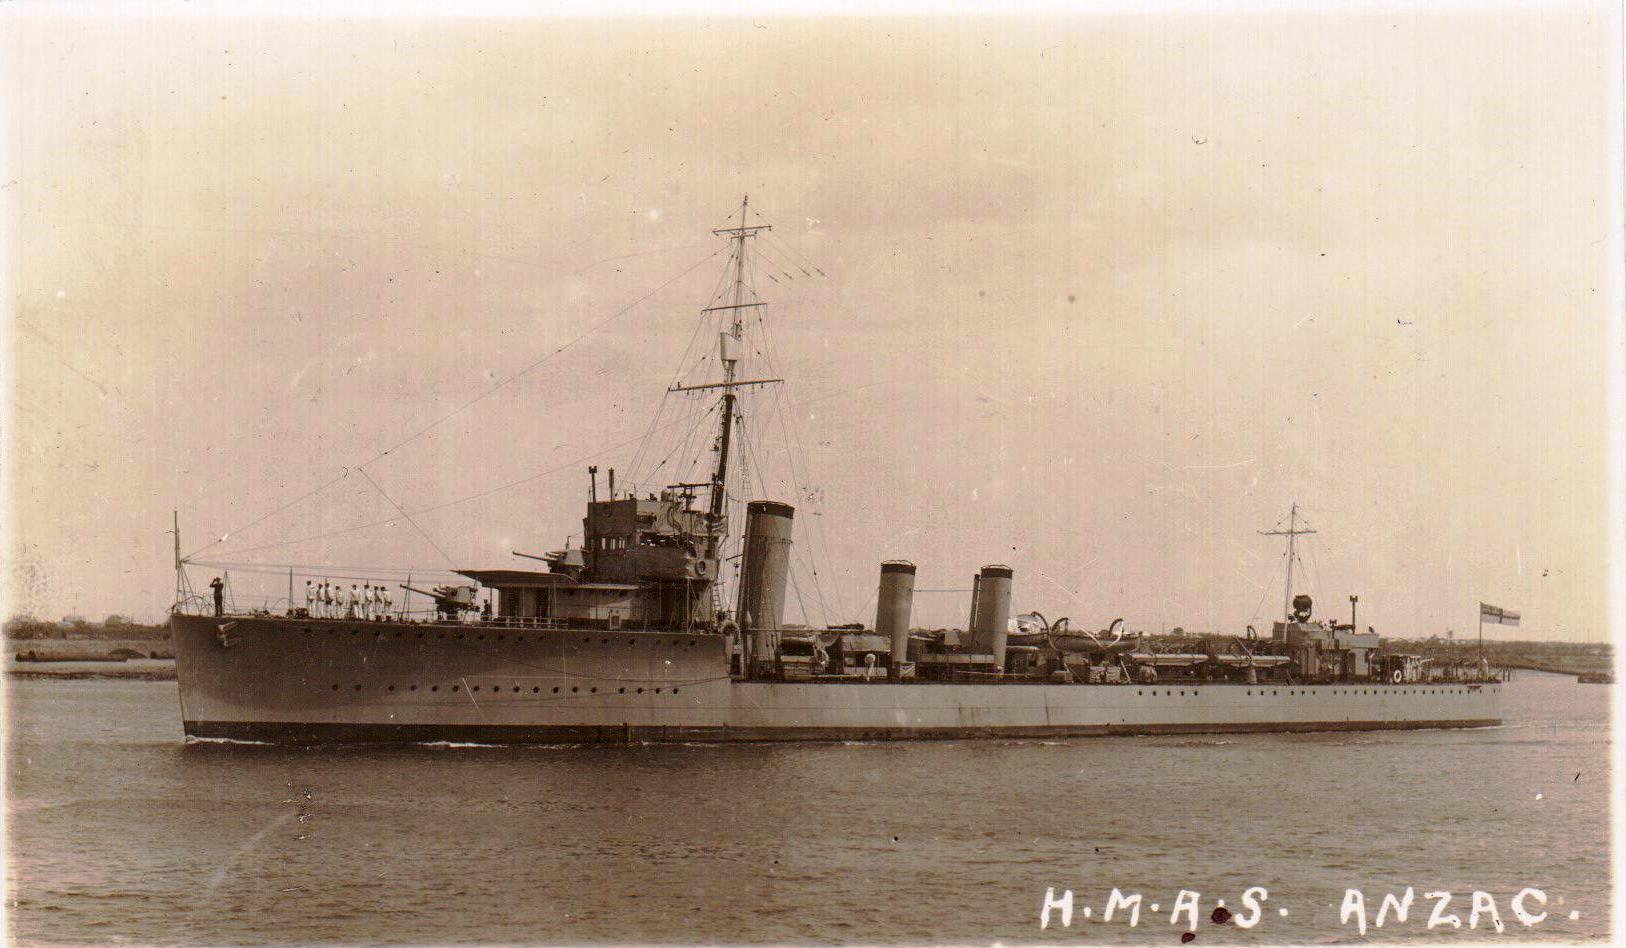 Image: Destroyer warship